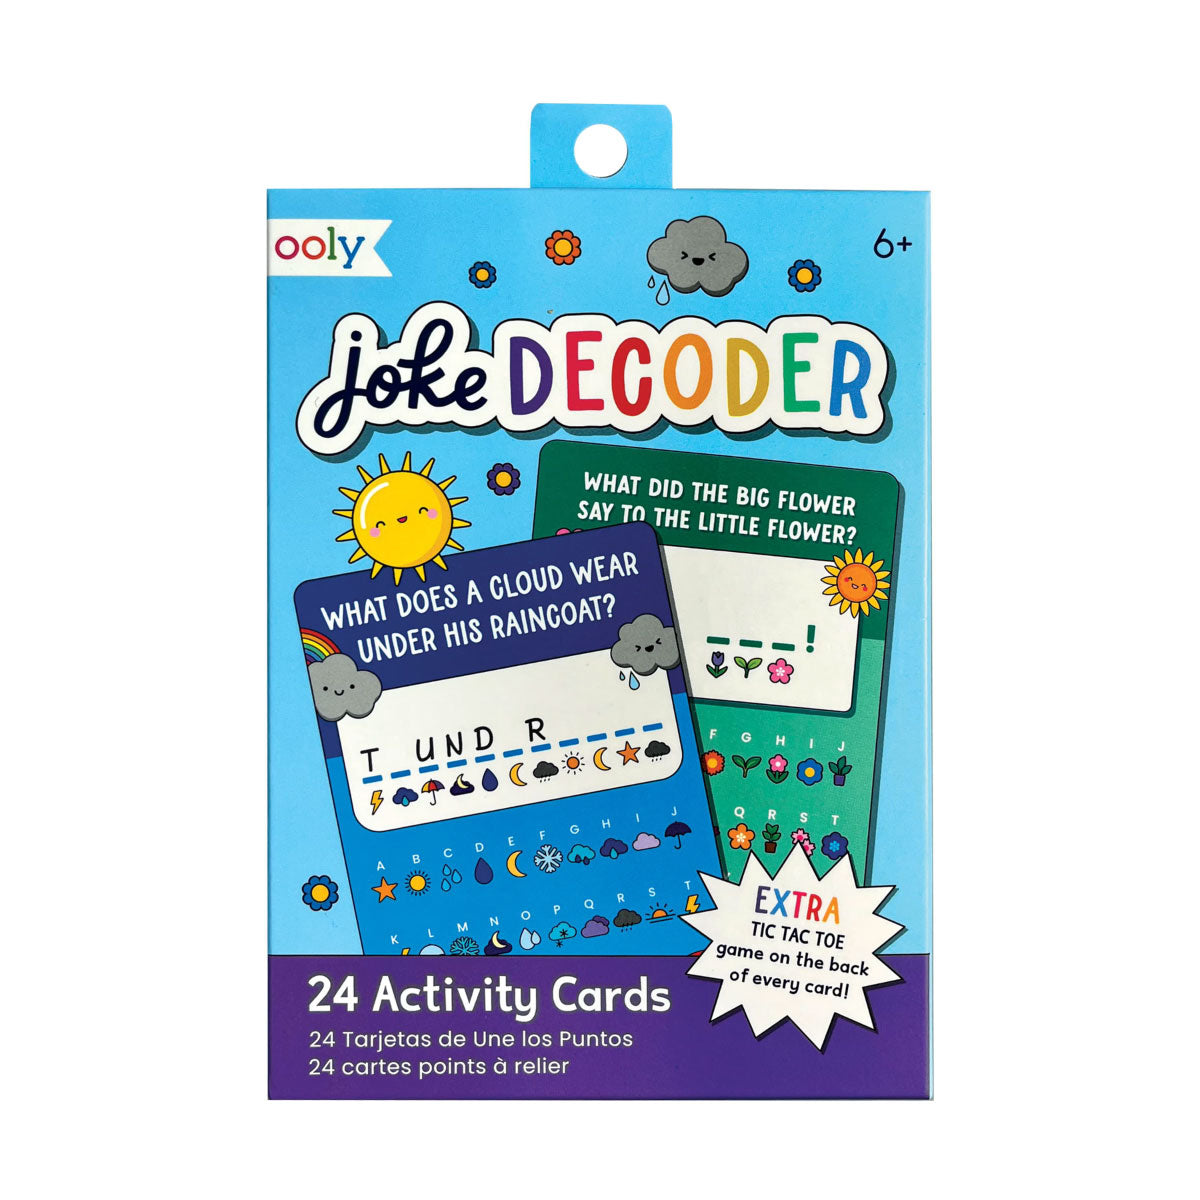 ooly Joke Decoder Paper Games